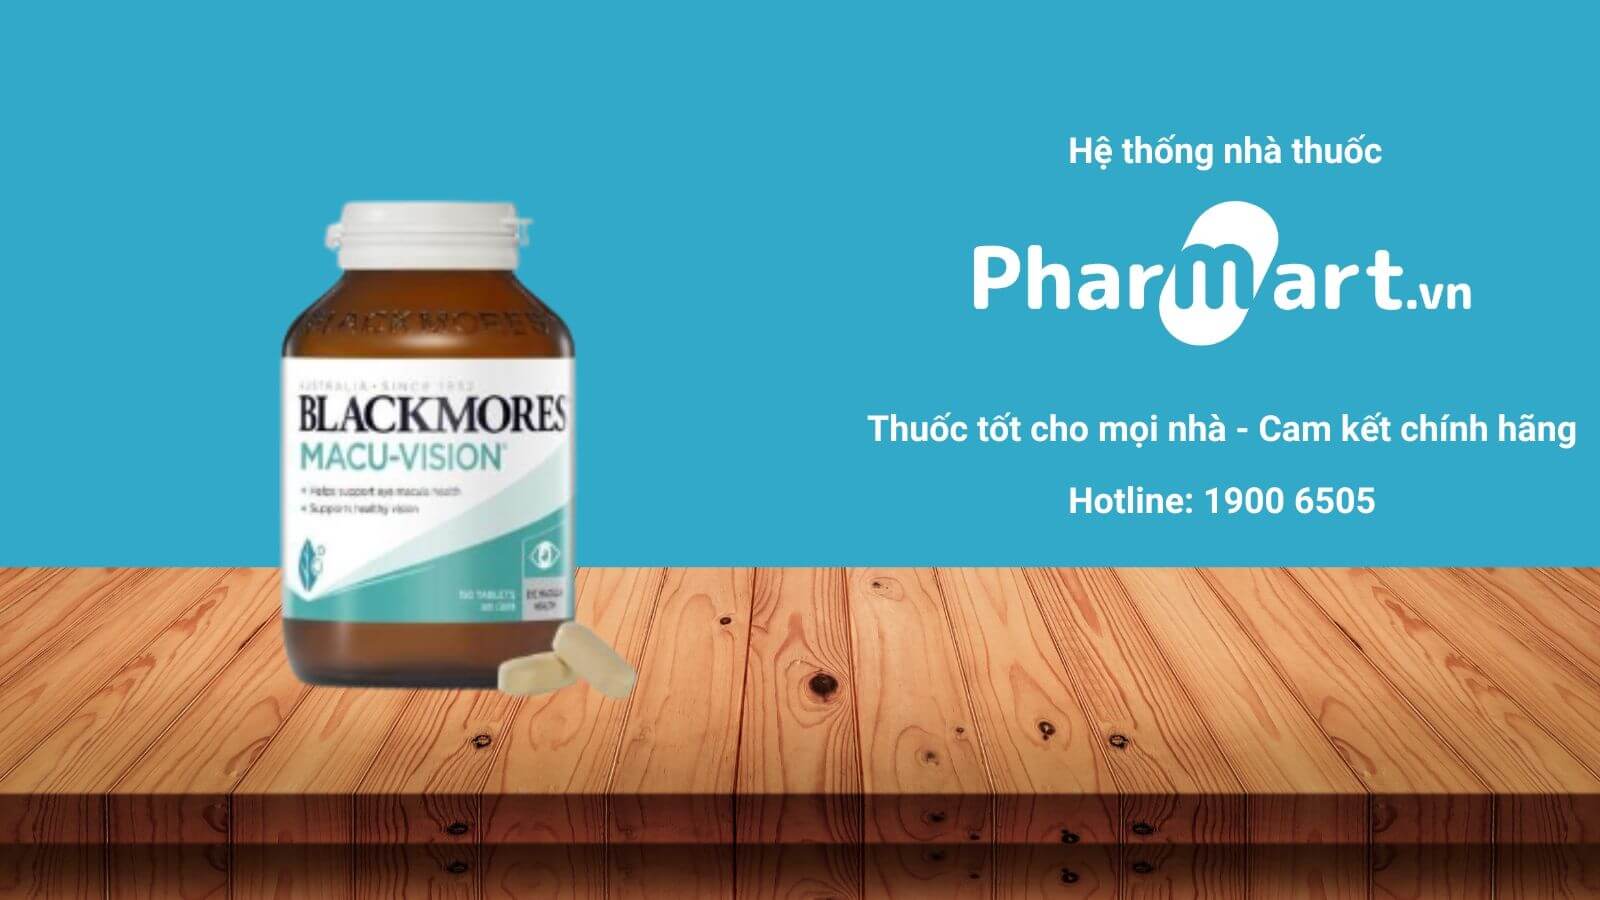 Liên hệ Pharmart.vn để đảm bảo mua hàng chính hãng